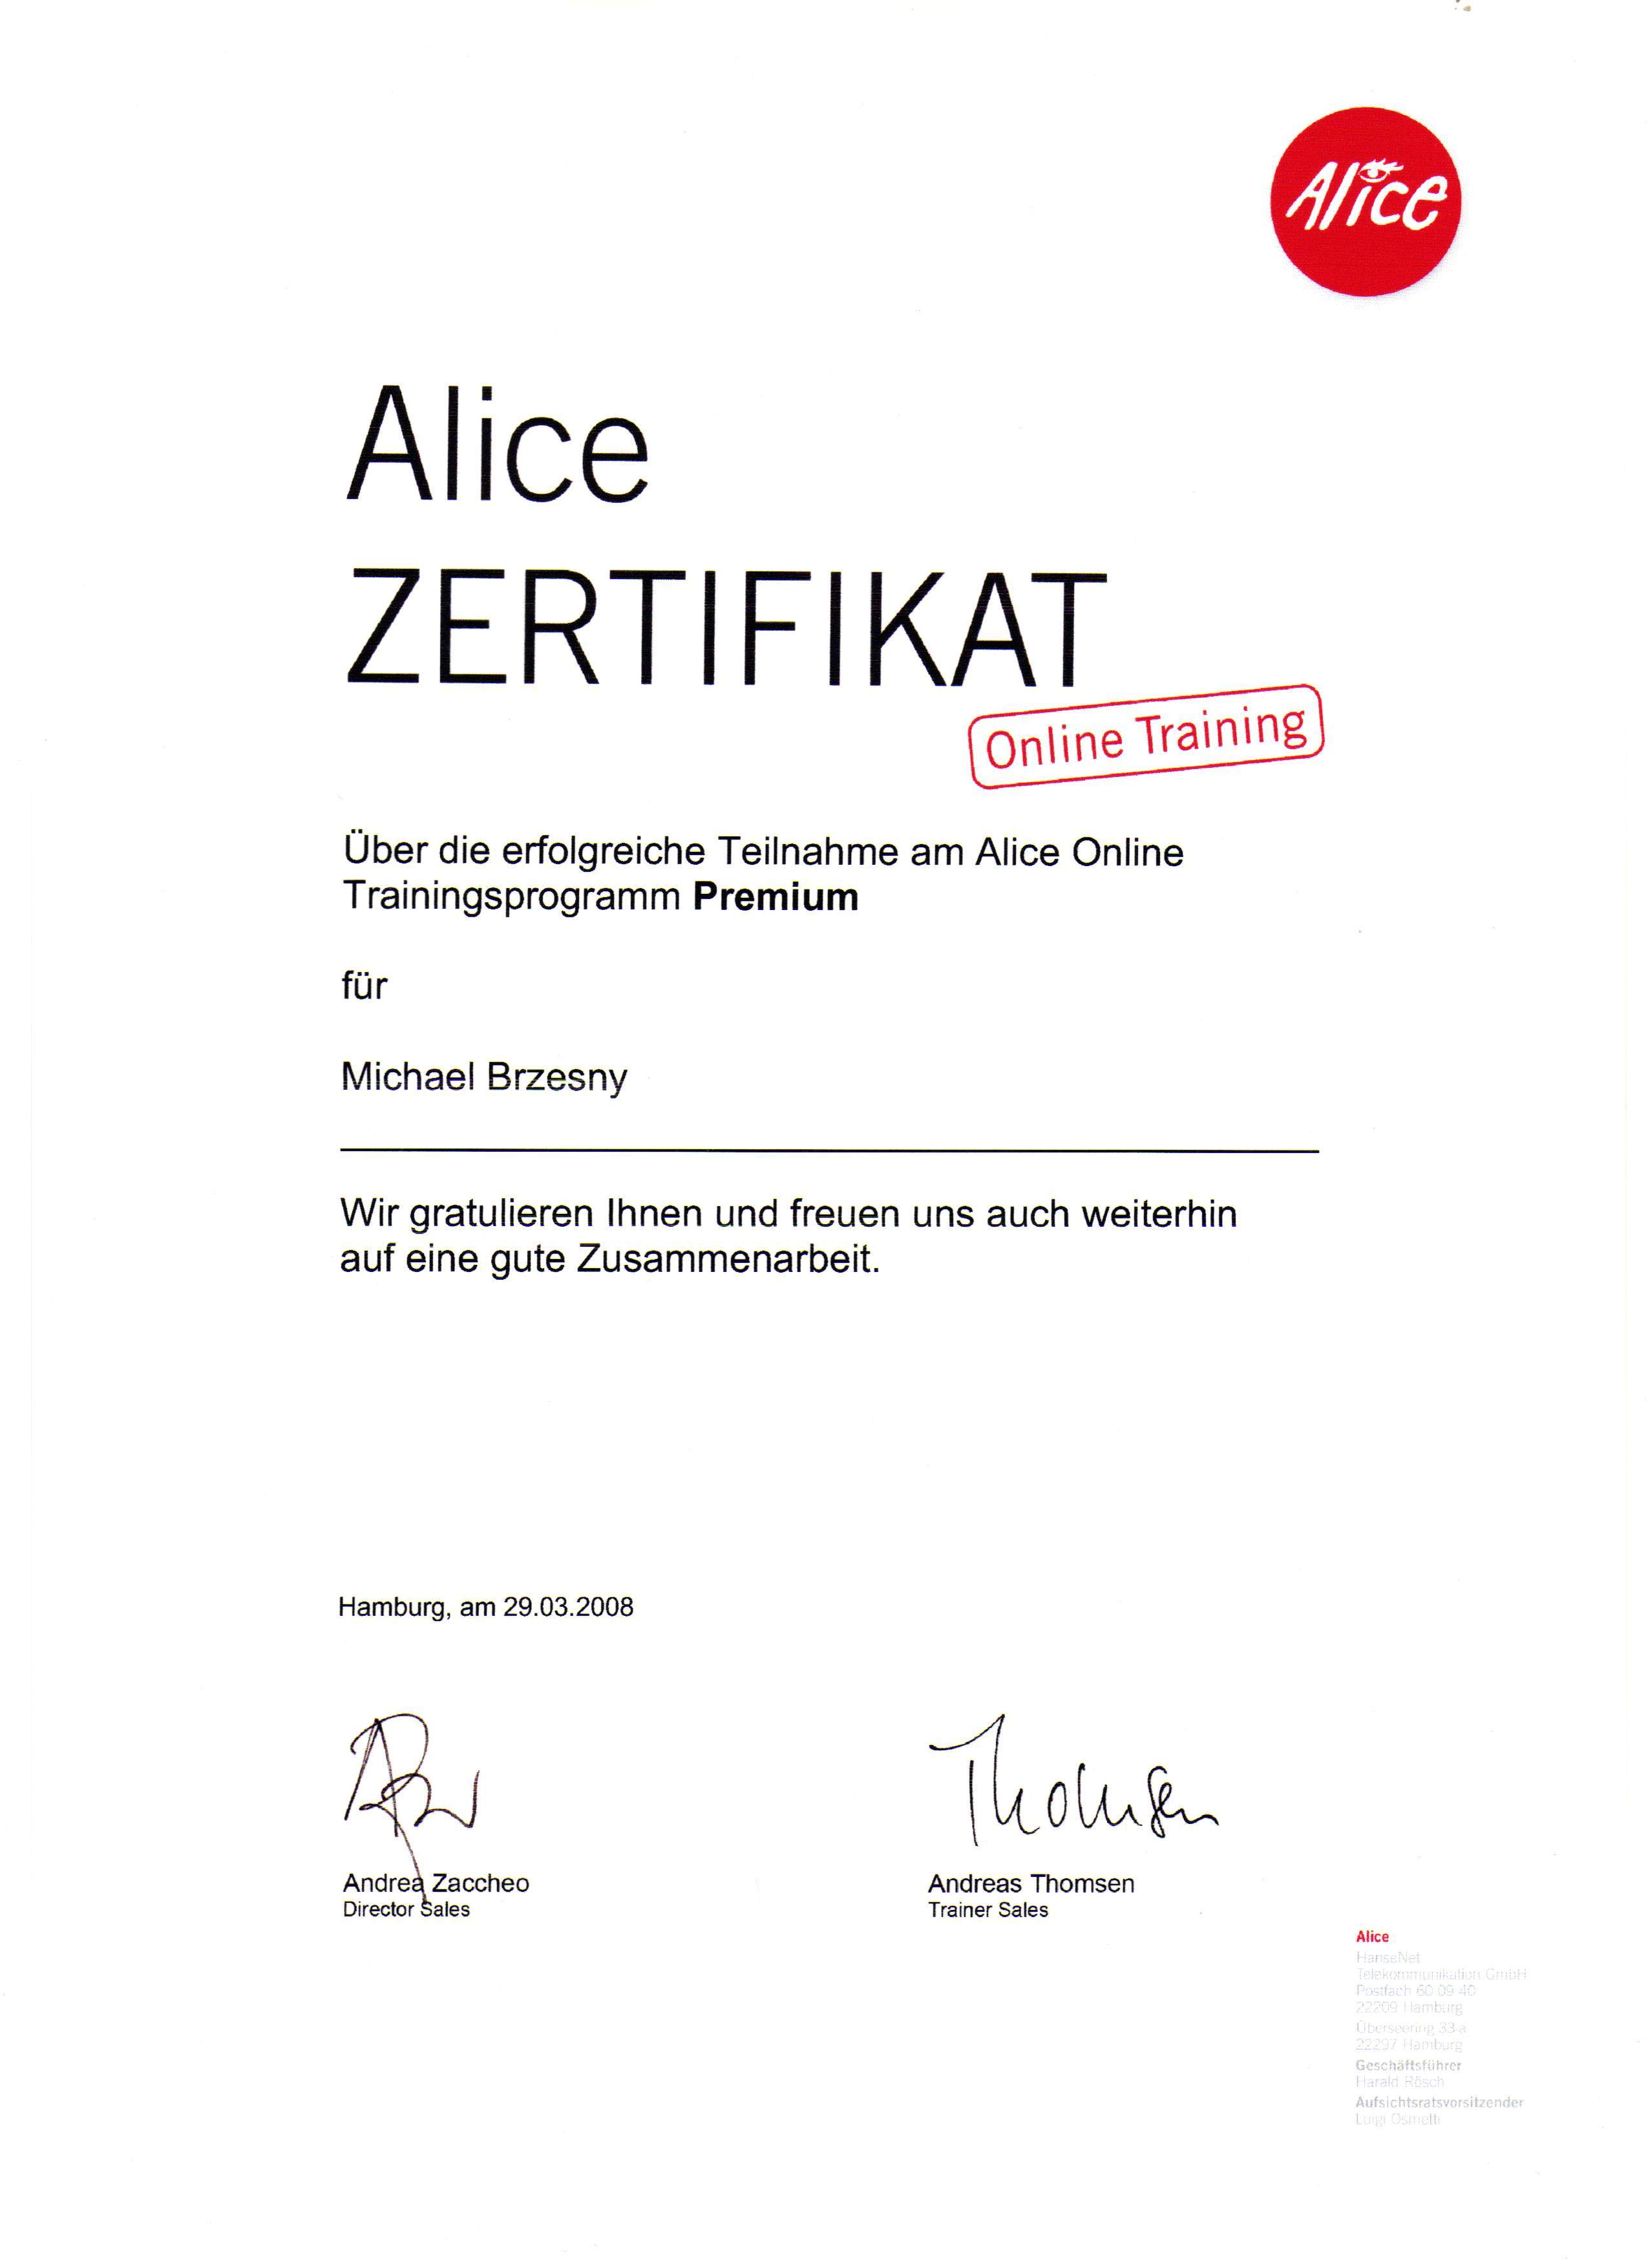 certificate-290308-002